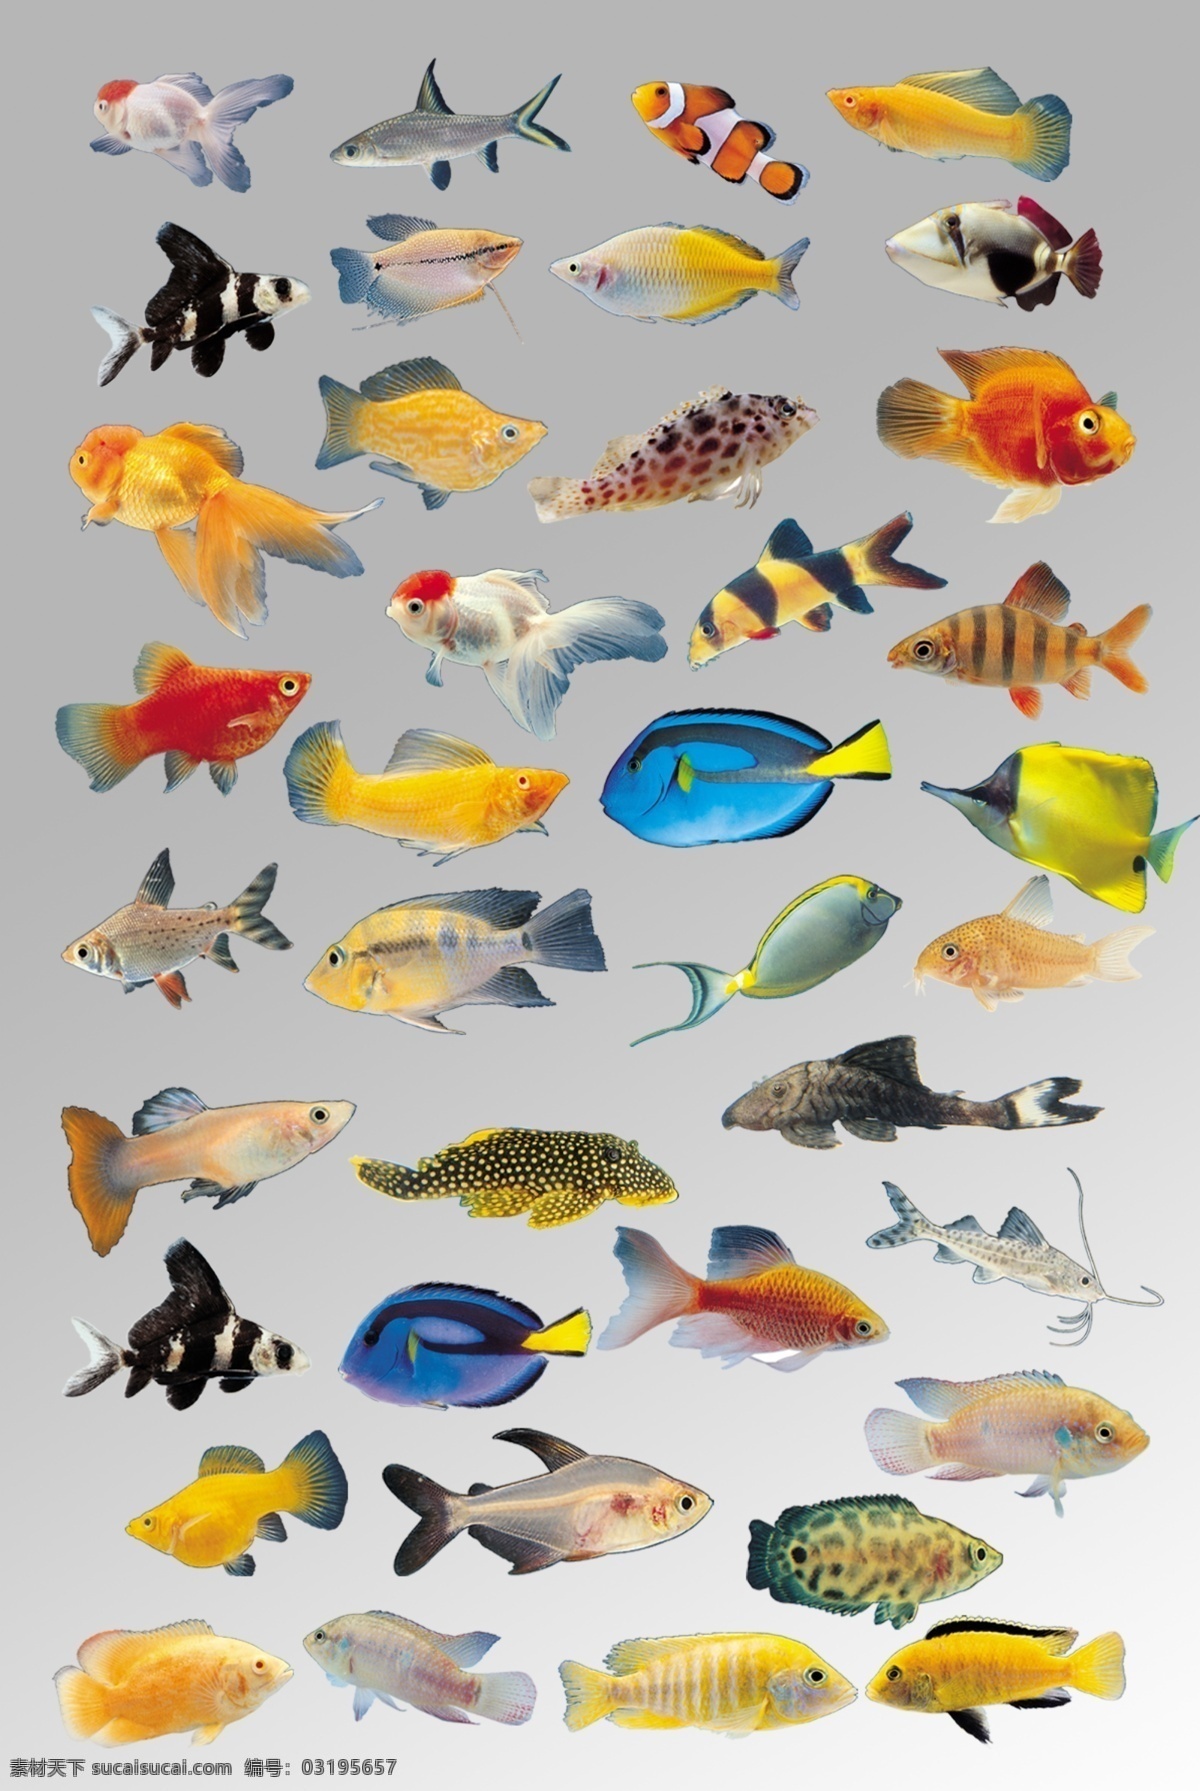 组 各种各样 色彩斑斓 鱼类 海洋生物 元素 海洋生物集合 psd分层 卡通鱼类 海底世界 海底生物 海洋 卡通素材 海洋素材 设计素材 海鱼